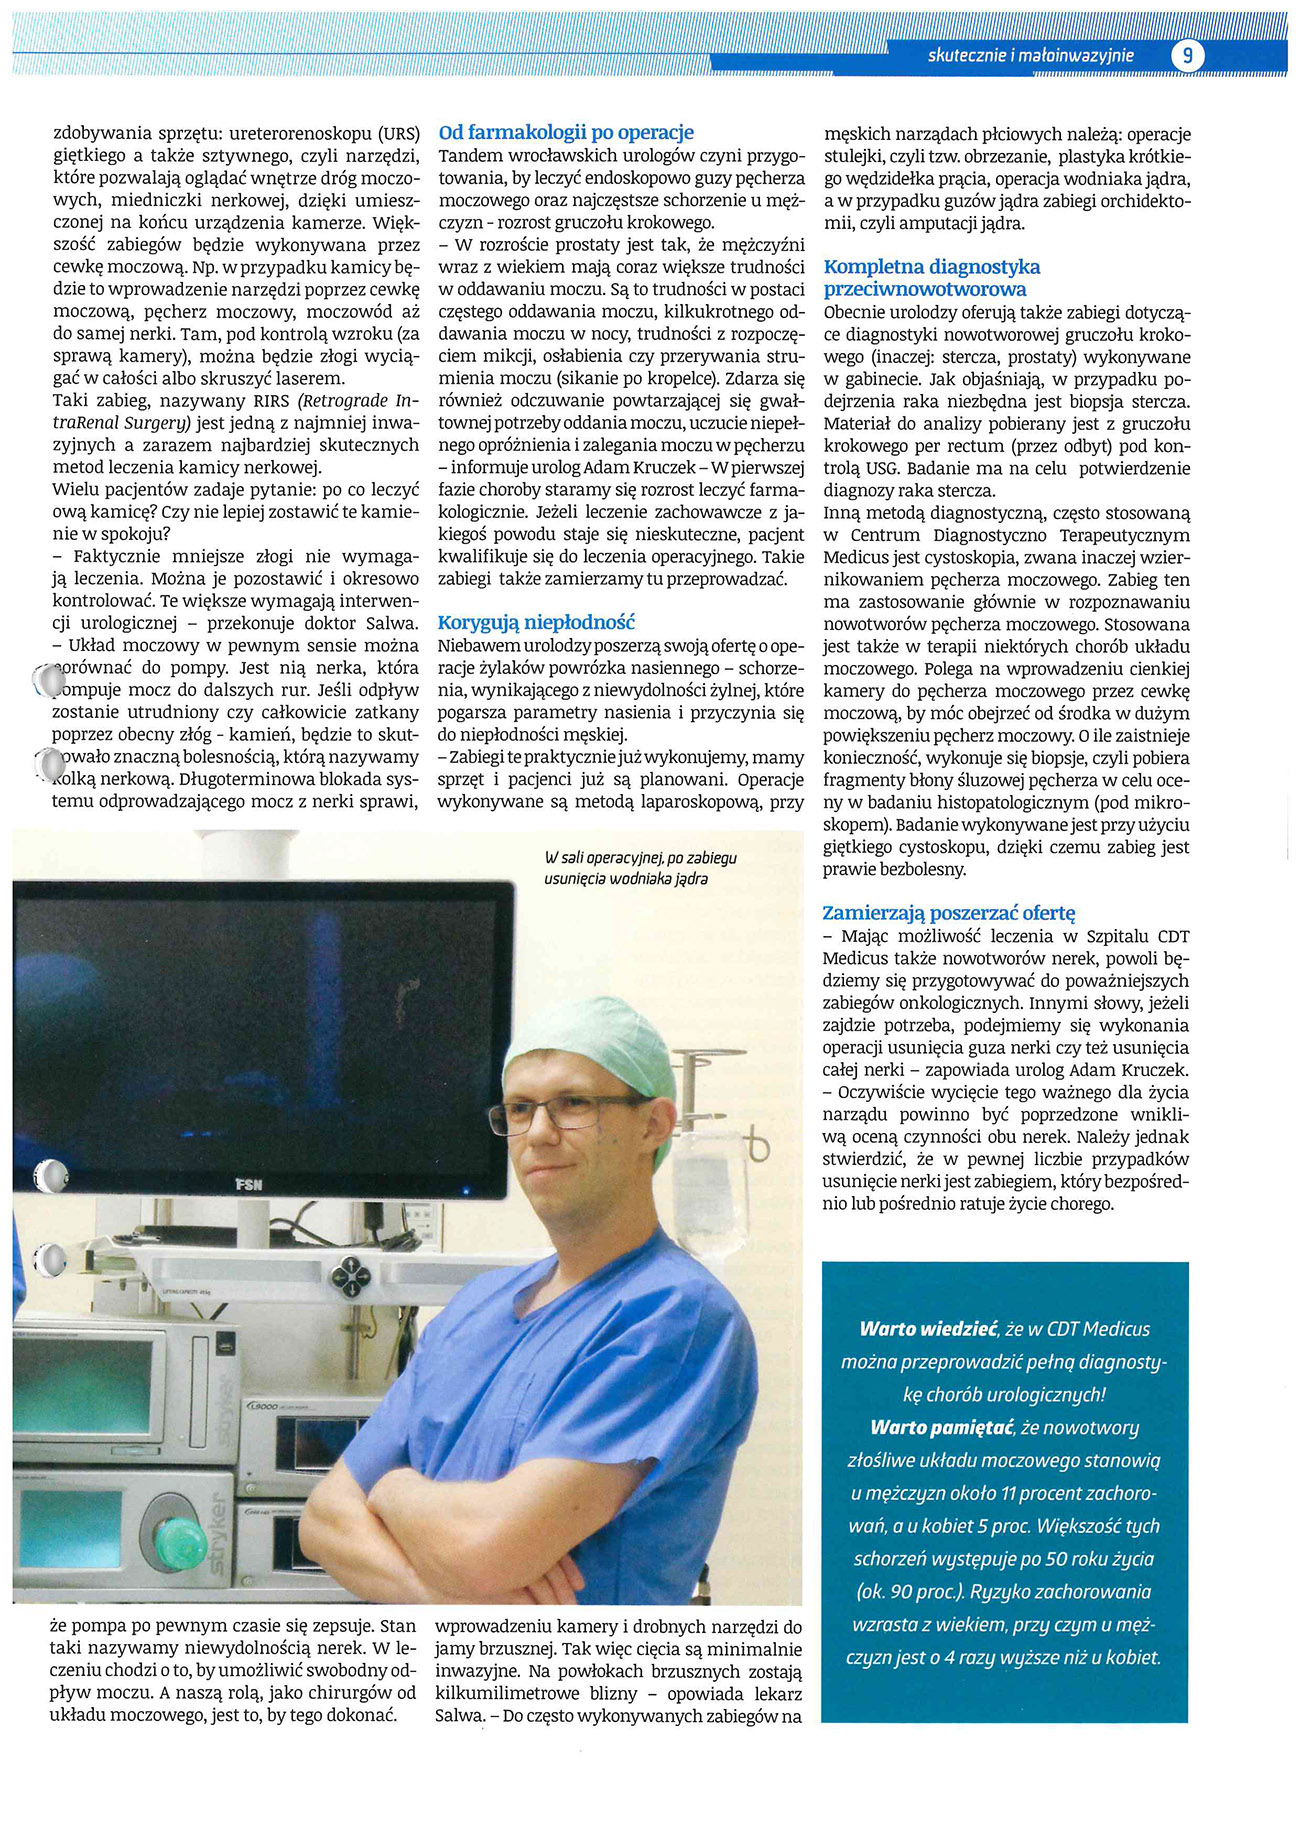 #urologia #diagnostyka #operacja #lubin